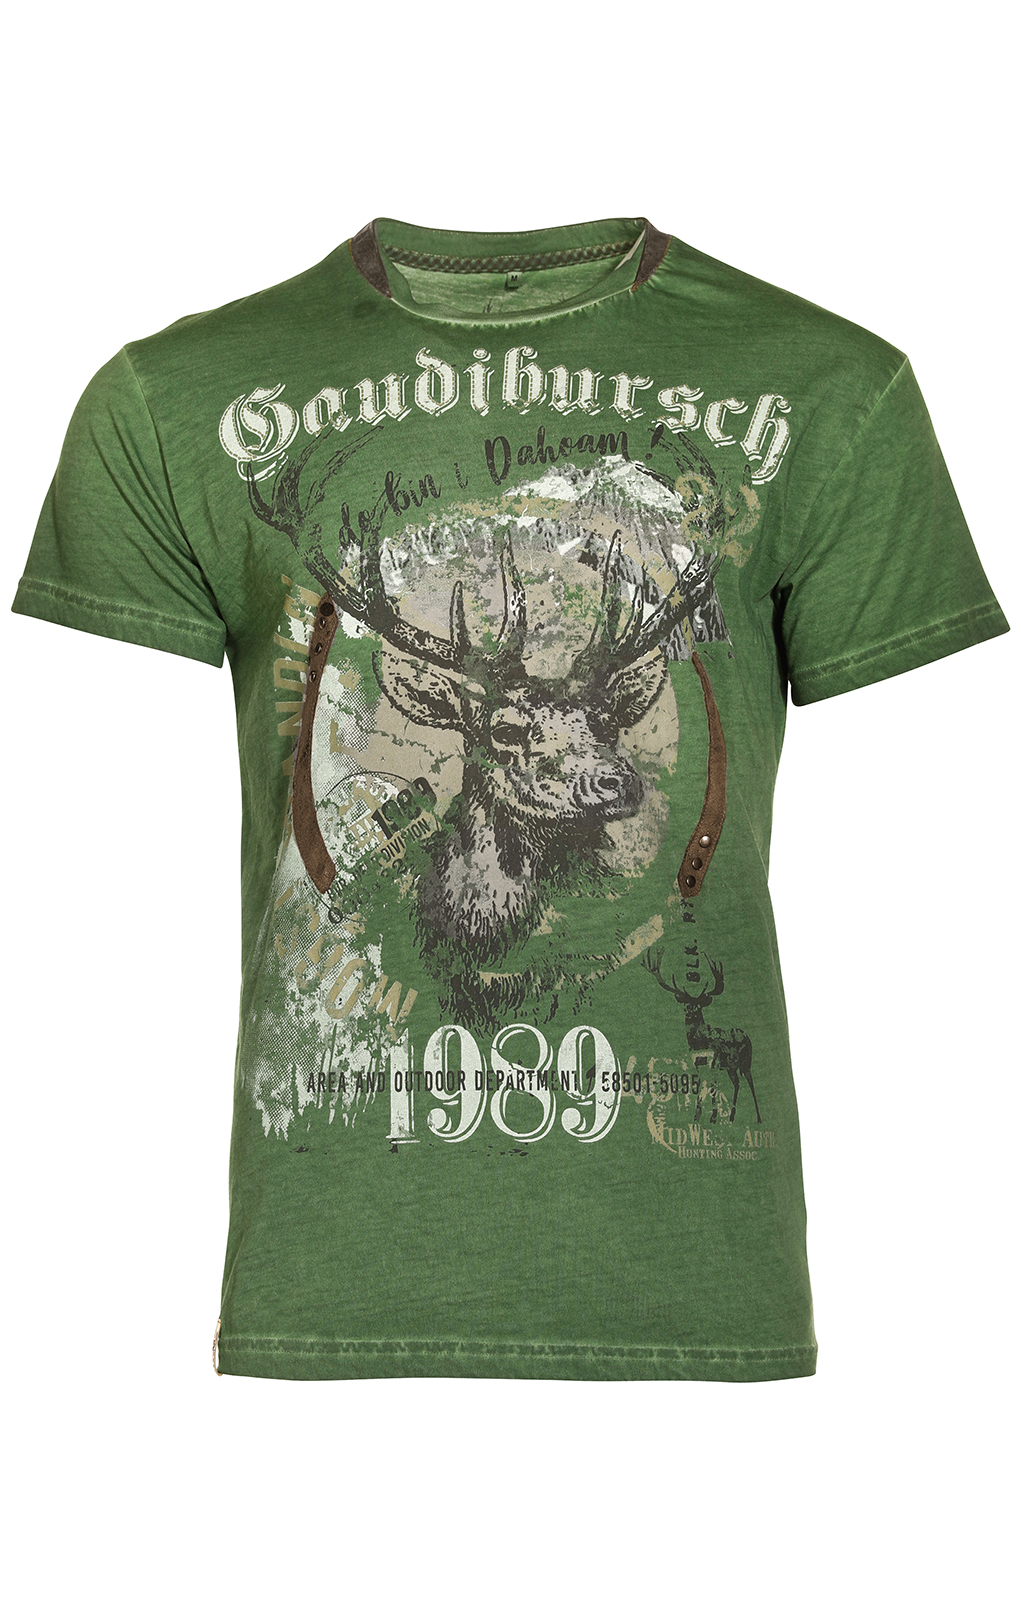 weitere Bilder von Trachten T-Shirt B36 - GAUDIBURSCH grün